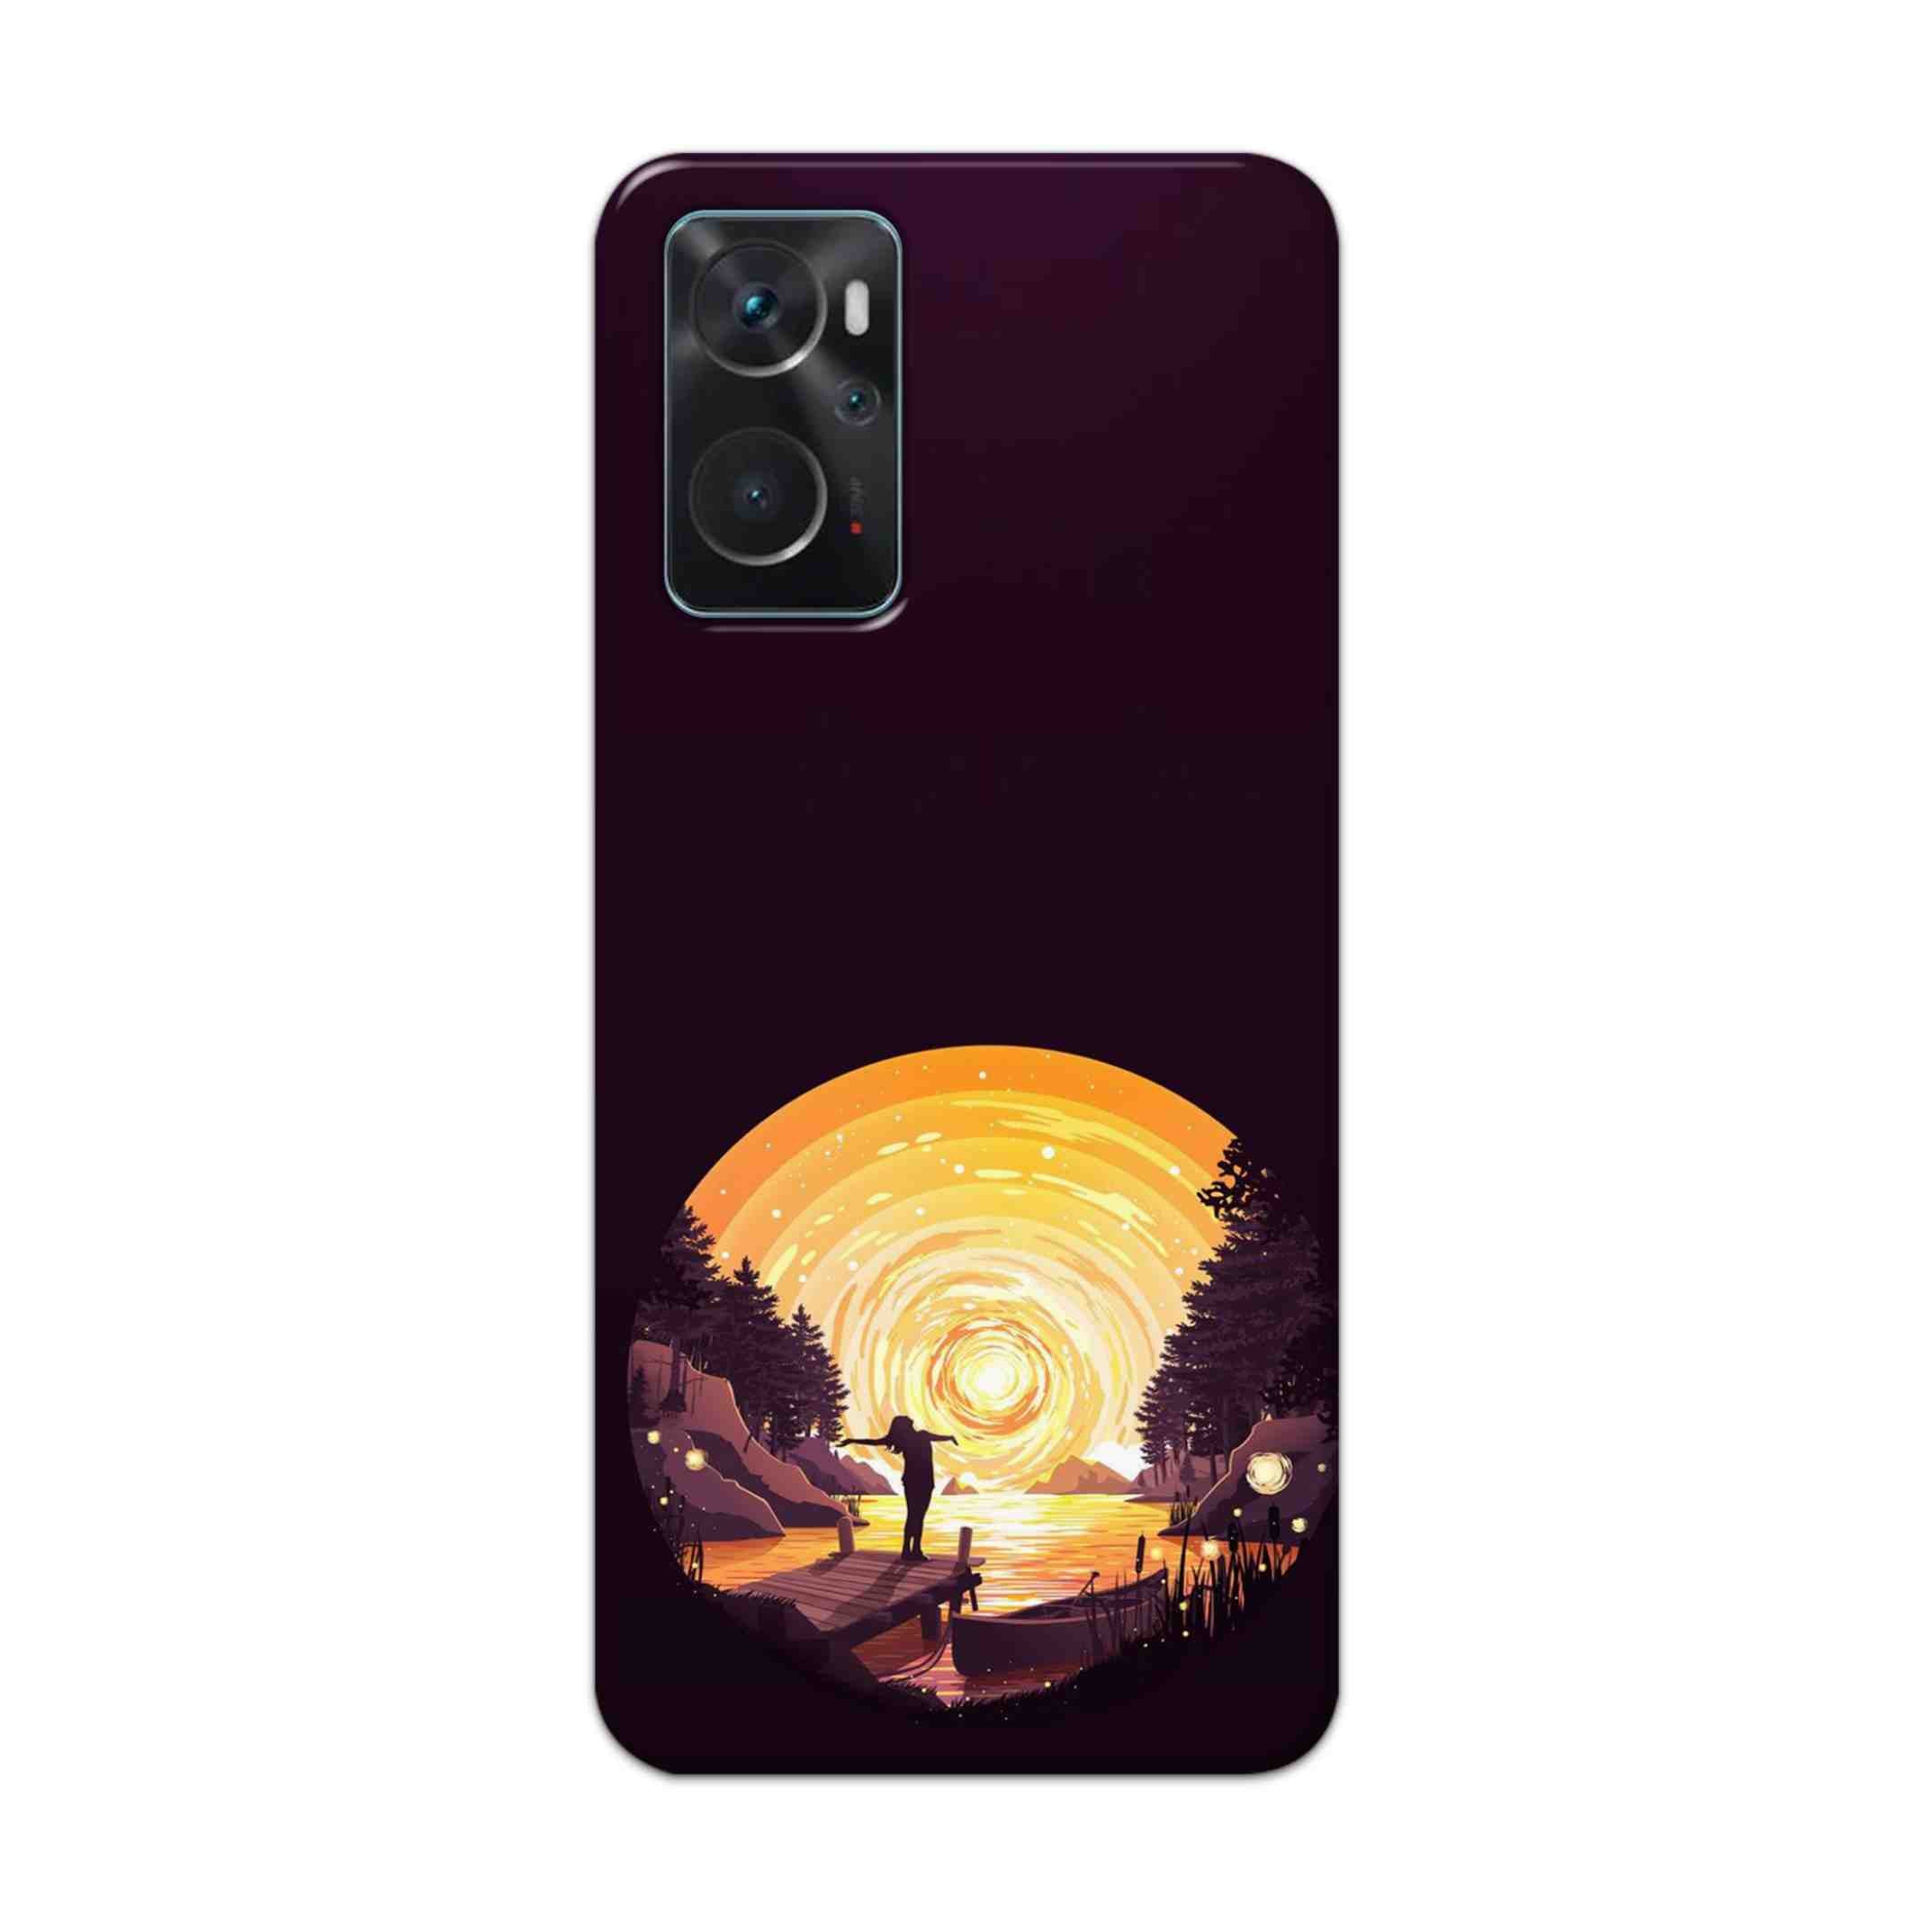 Buy Night Sunrise Hard Back Mobile Phone Case Cover For Oppo K10 Online